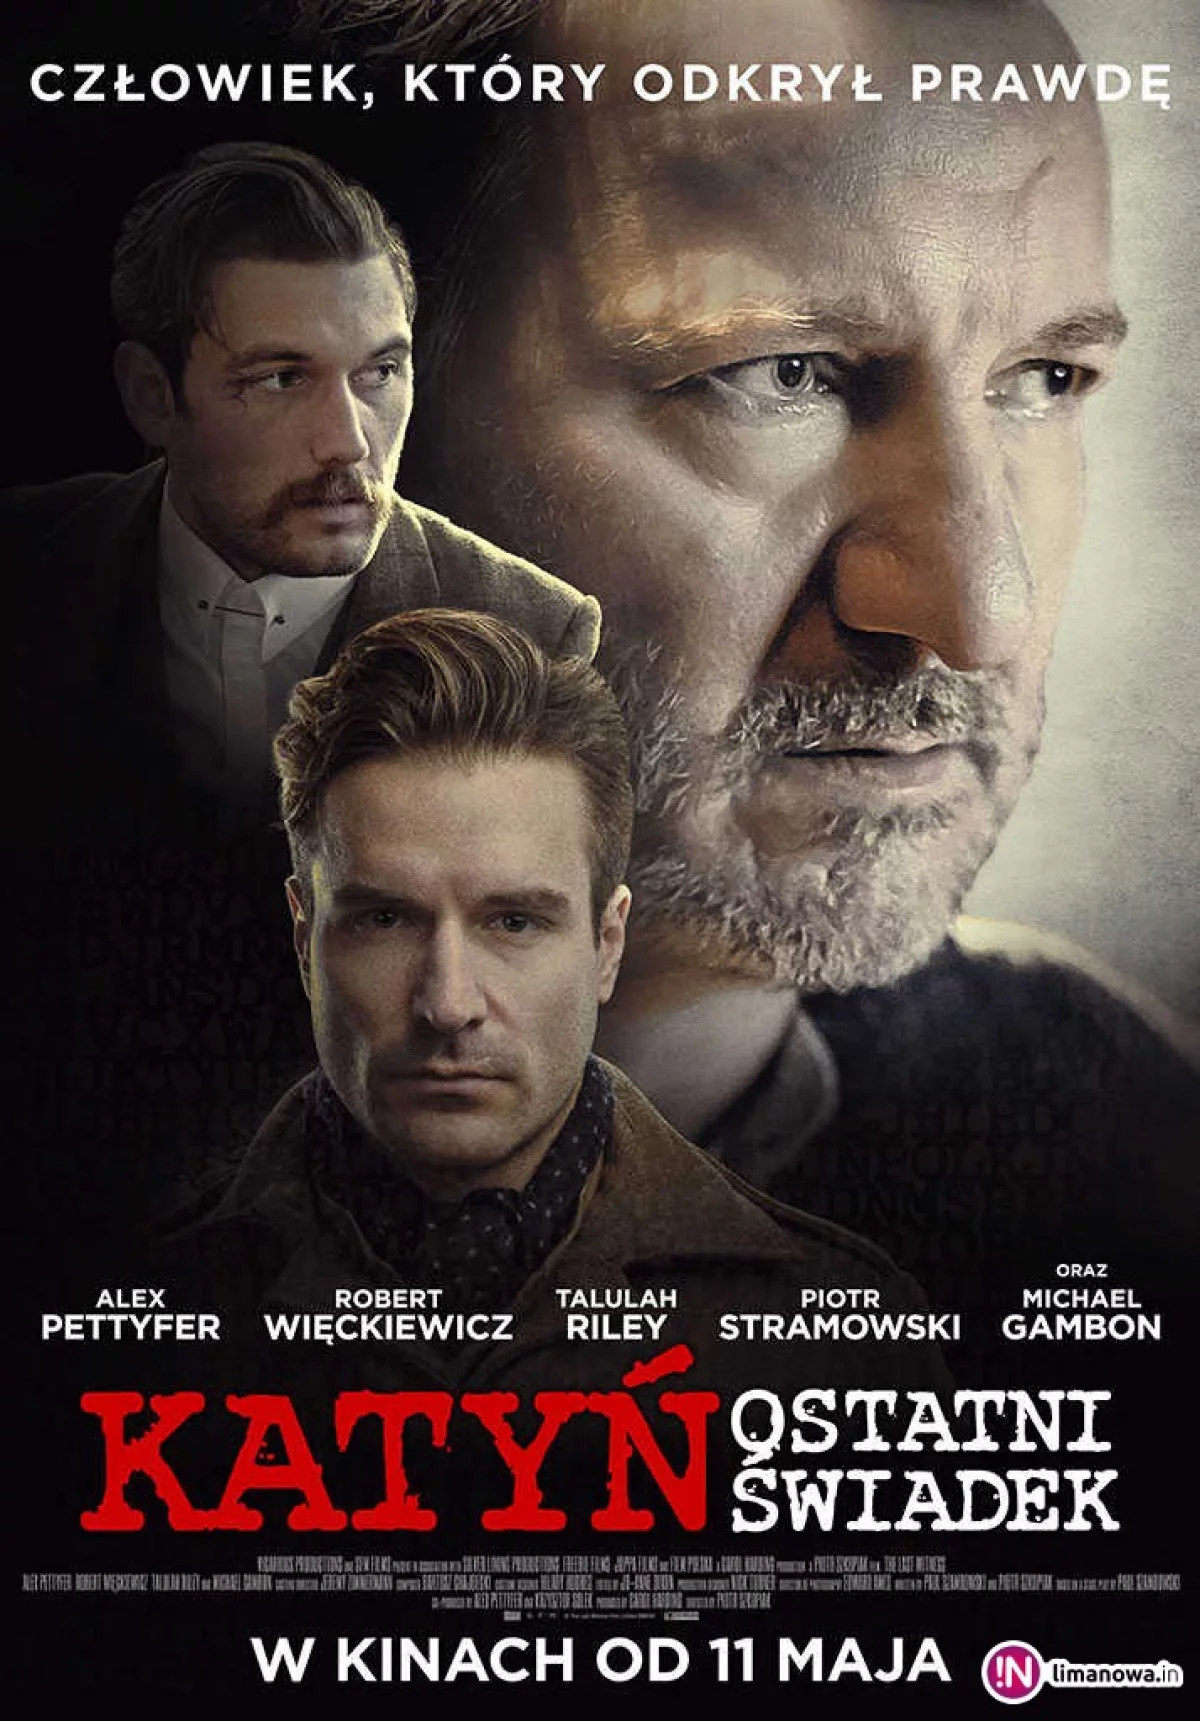 „Katyń: Ostatni świadek” od 25 maja w kinie Klaps